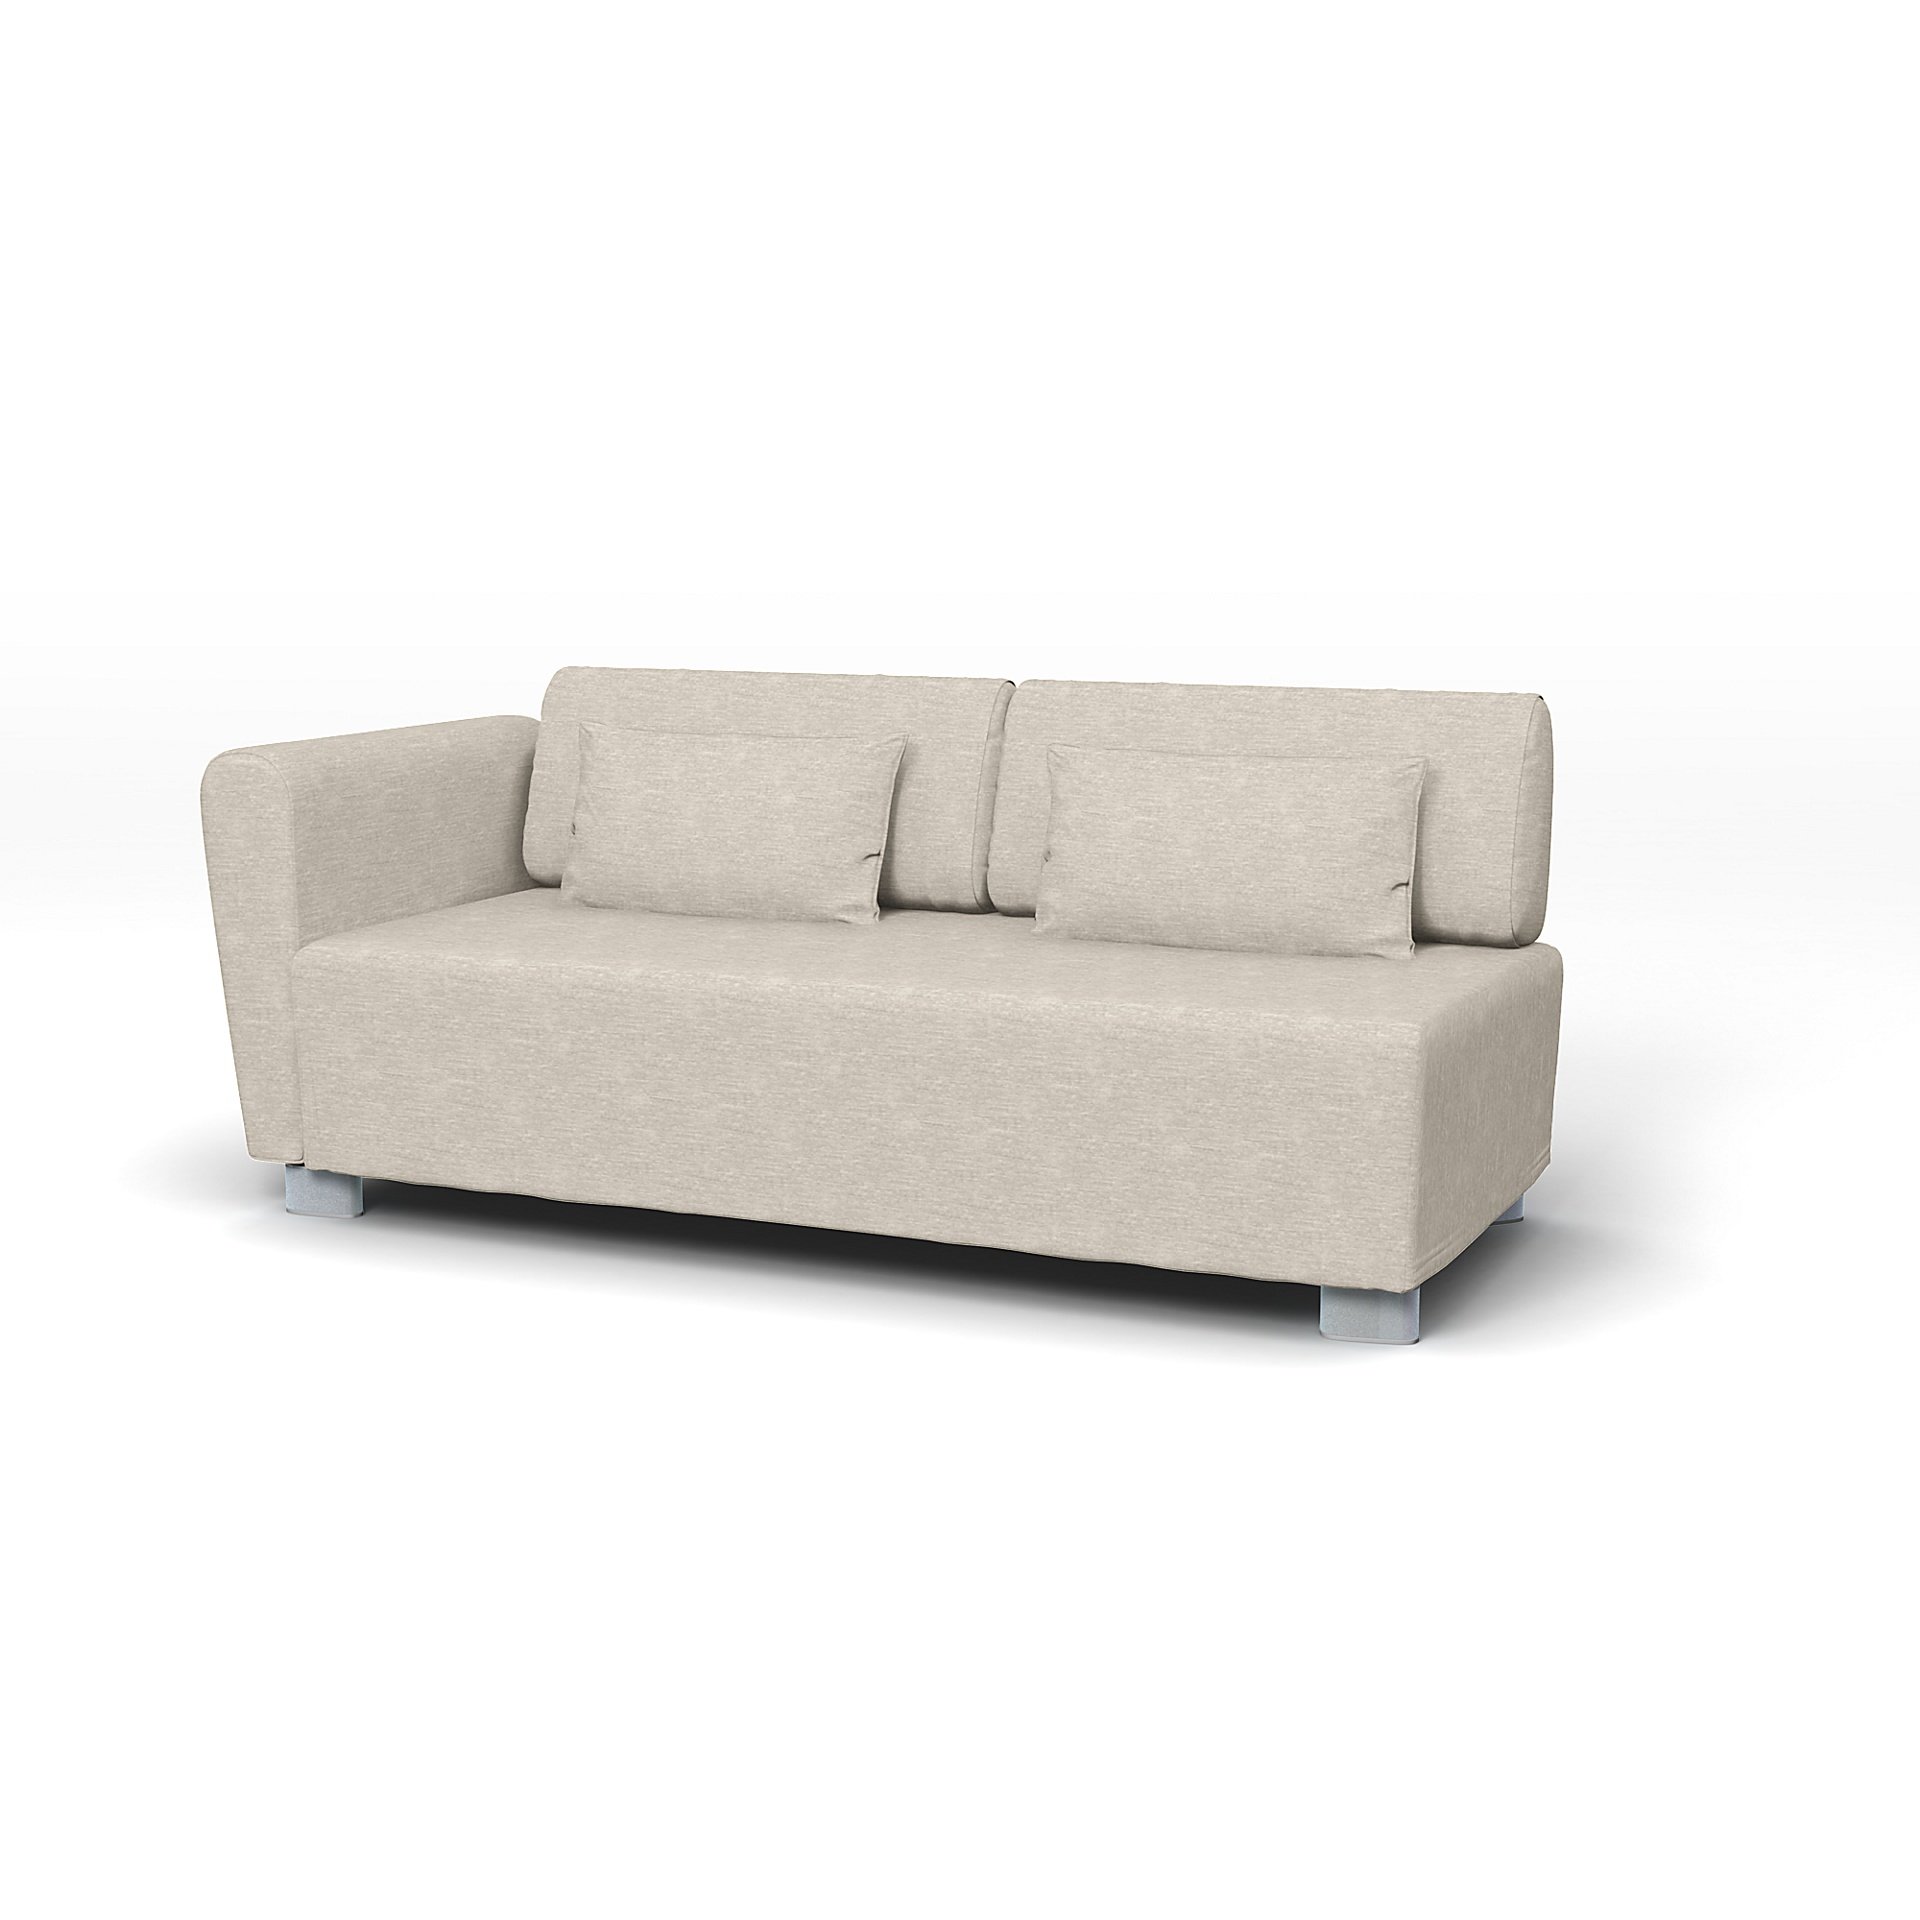 IKEA - Mysinge 2 Seater Sofa with Armrest Cover, Natural White, Velvet - Bemz